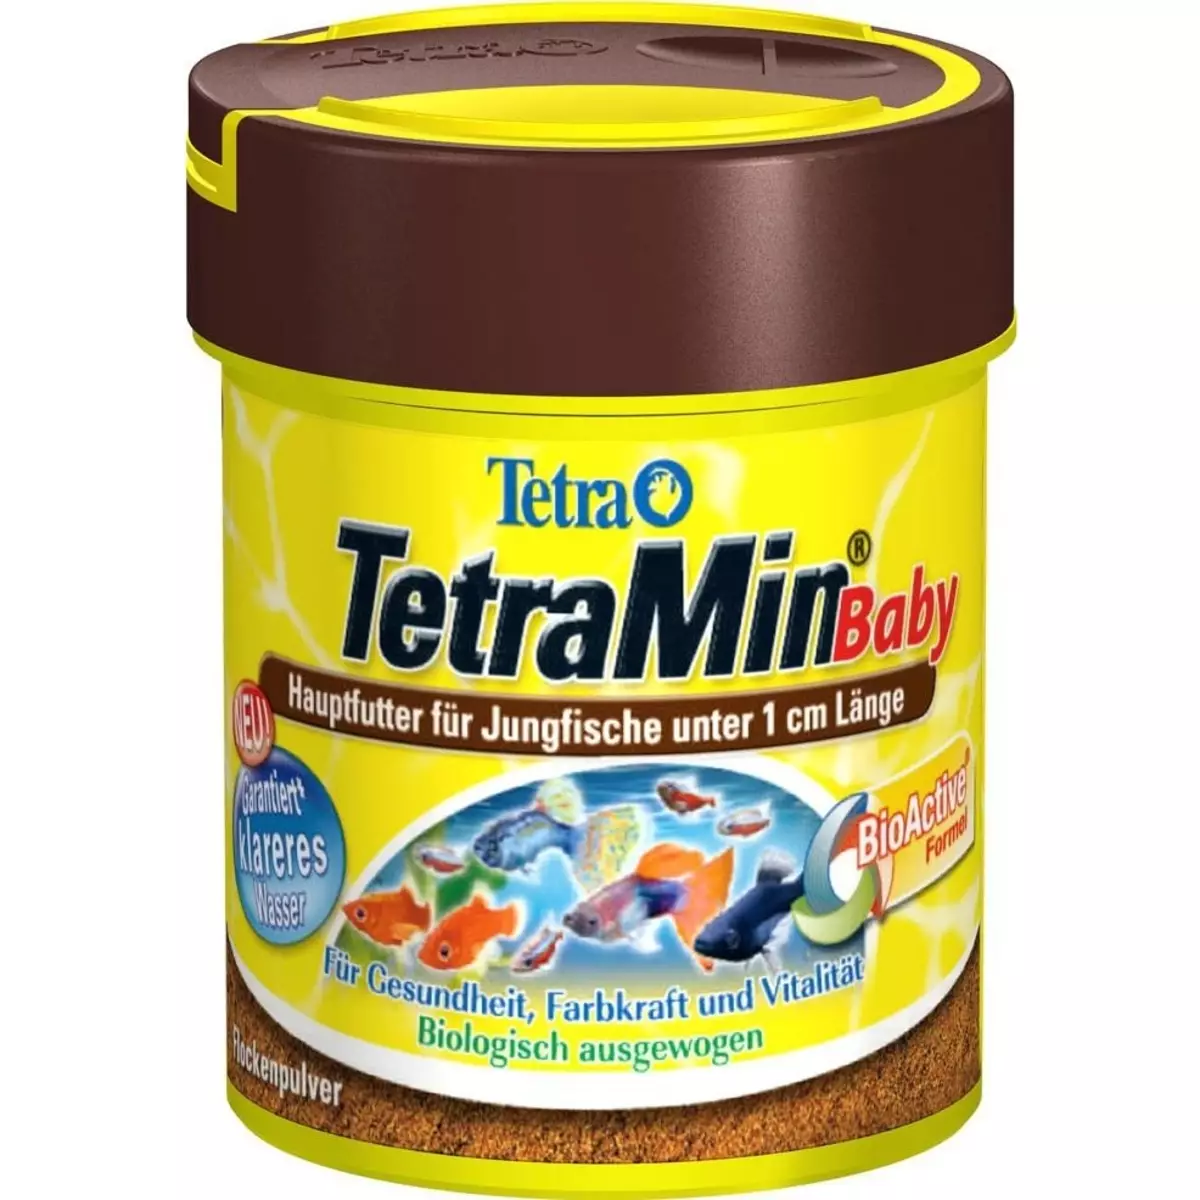 Alimentar Tetra: cíclids de peixos i peix gat, tortuga i el disc de Corydoras cereals i altres espècies de peixos d'aquari Descripció 11333_8